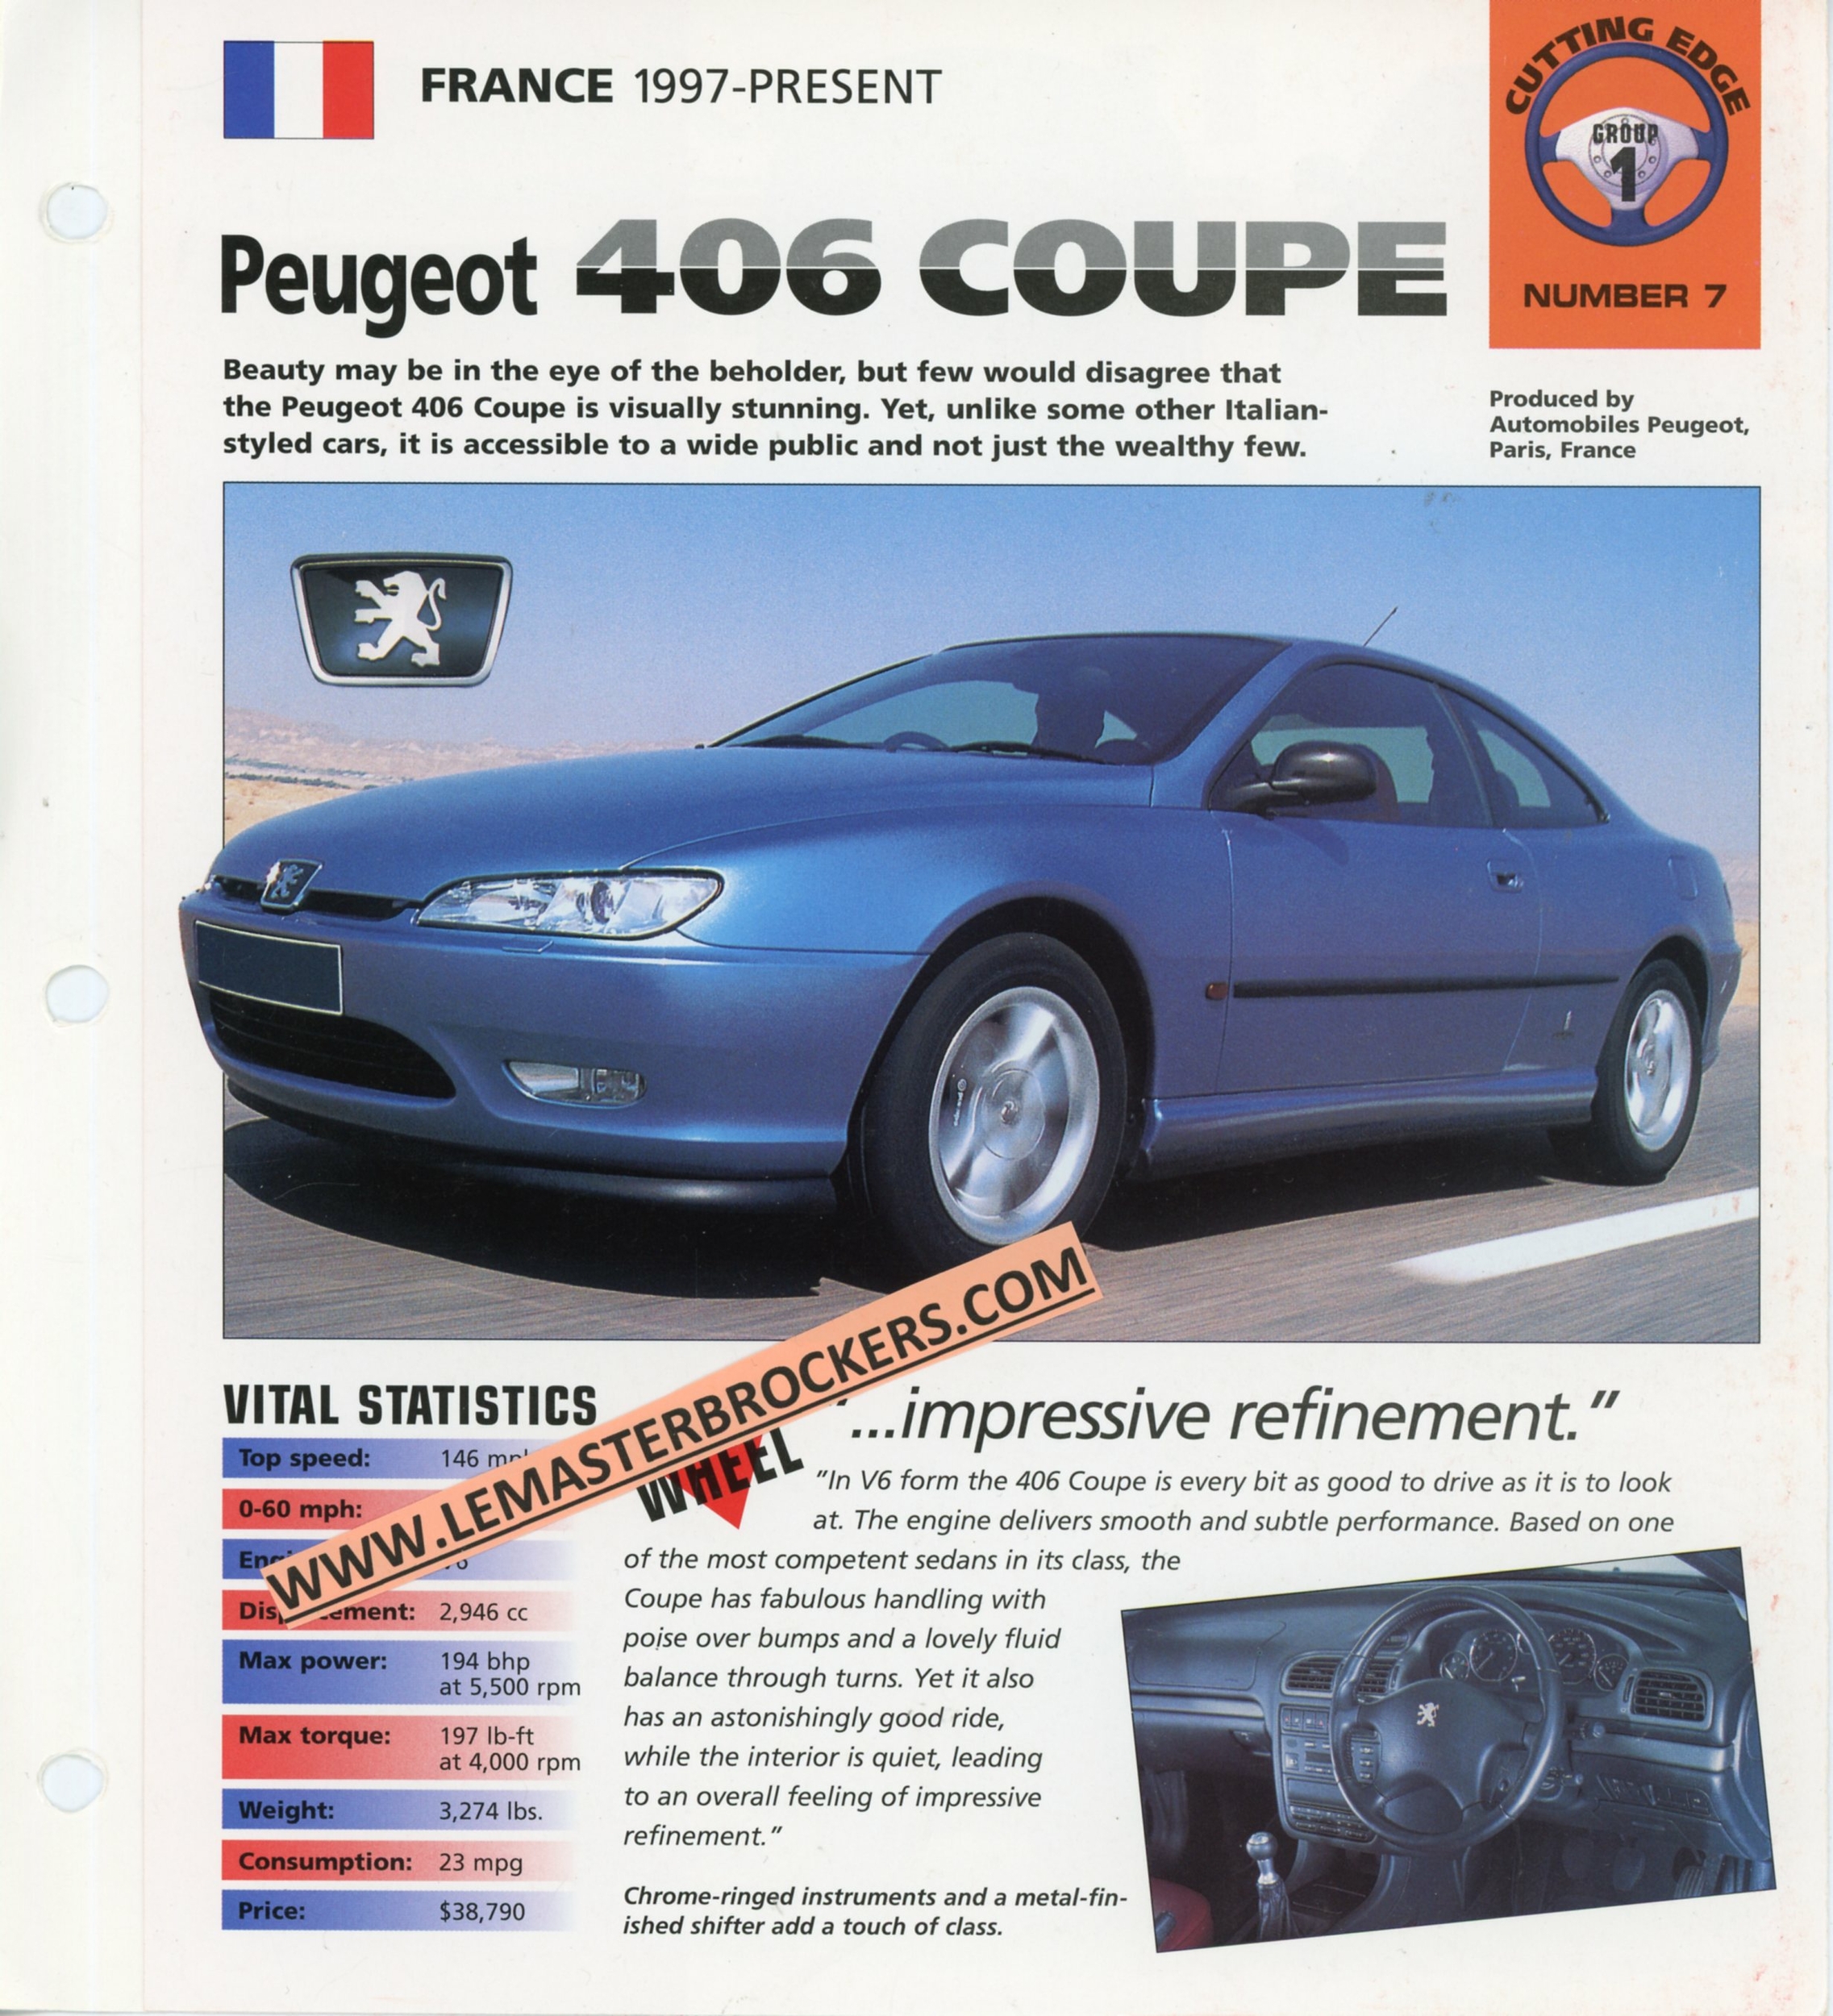 PEUGEOT-406-COUPE-1997-FICHE-TECHNIQUE-LEMASTERBROCKERS-LITTÉRATURE-AUTOMOBILE